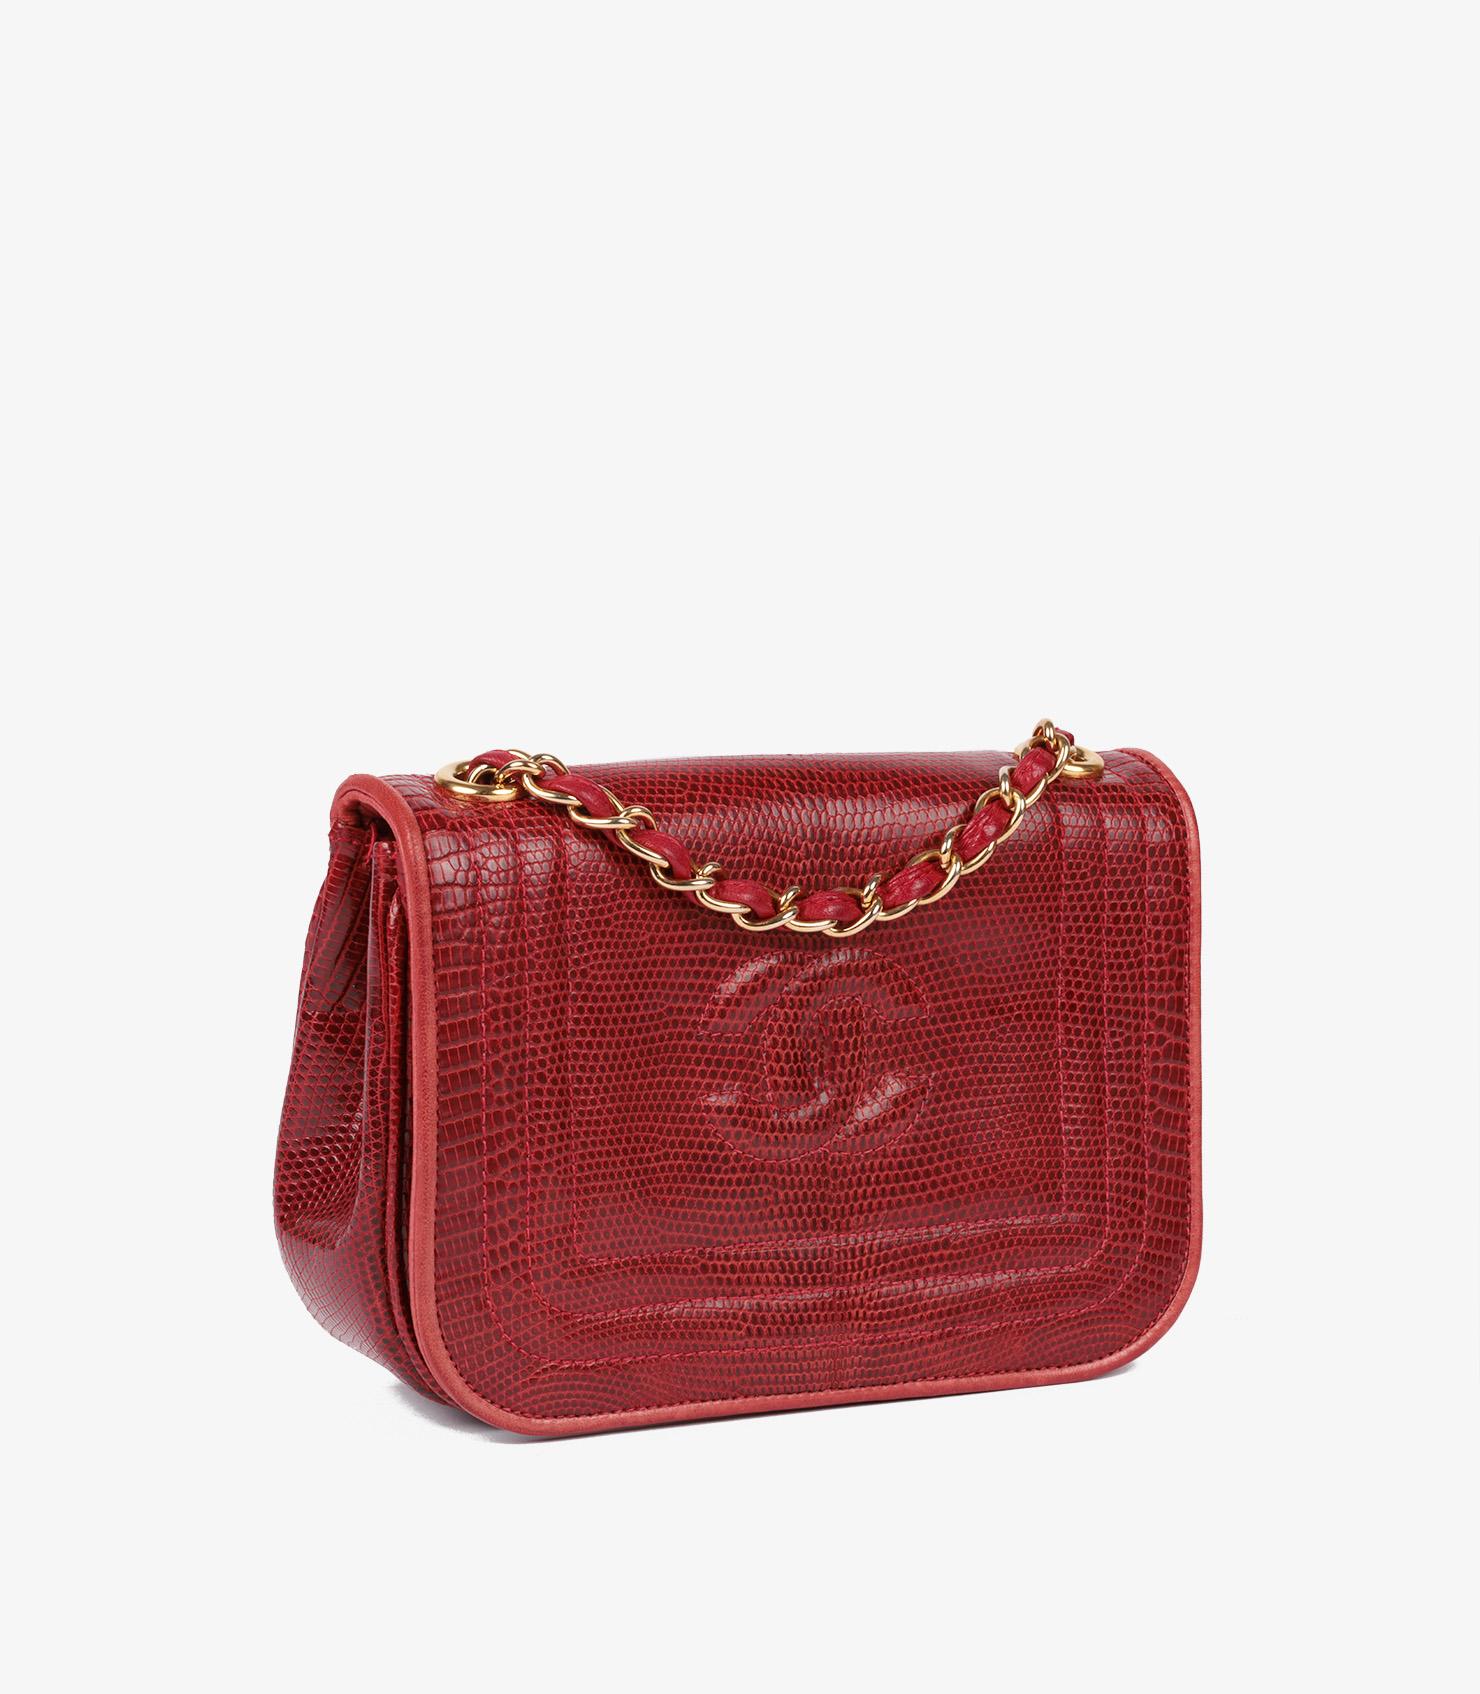 Chanel Rote Eidechsenleder Vintage Timeless Mini Flap Bag

Marke- Chanel
Modell- Zeitlose Mini-Klappentasche
Produkttyp- Umhängetasche, Schulter
Seriennummer - 89****
Alter- Circa 1989
Begleitet von - Chanel Staubbeutel, Box
Farbe - Rot
Hardware-